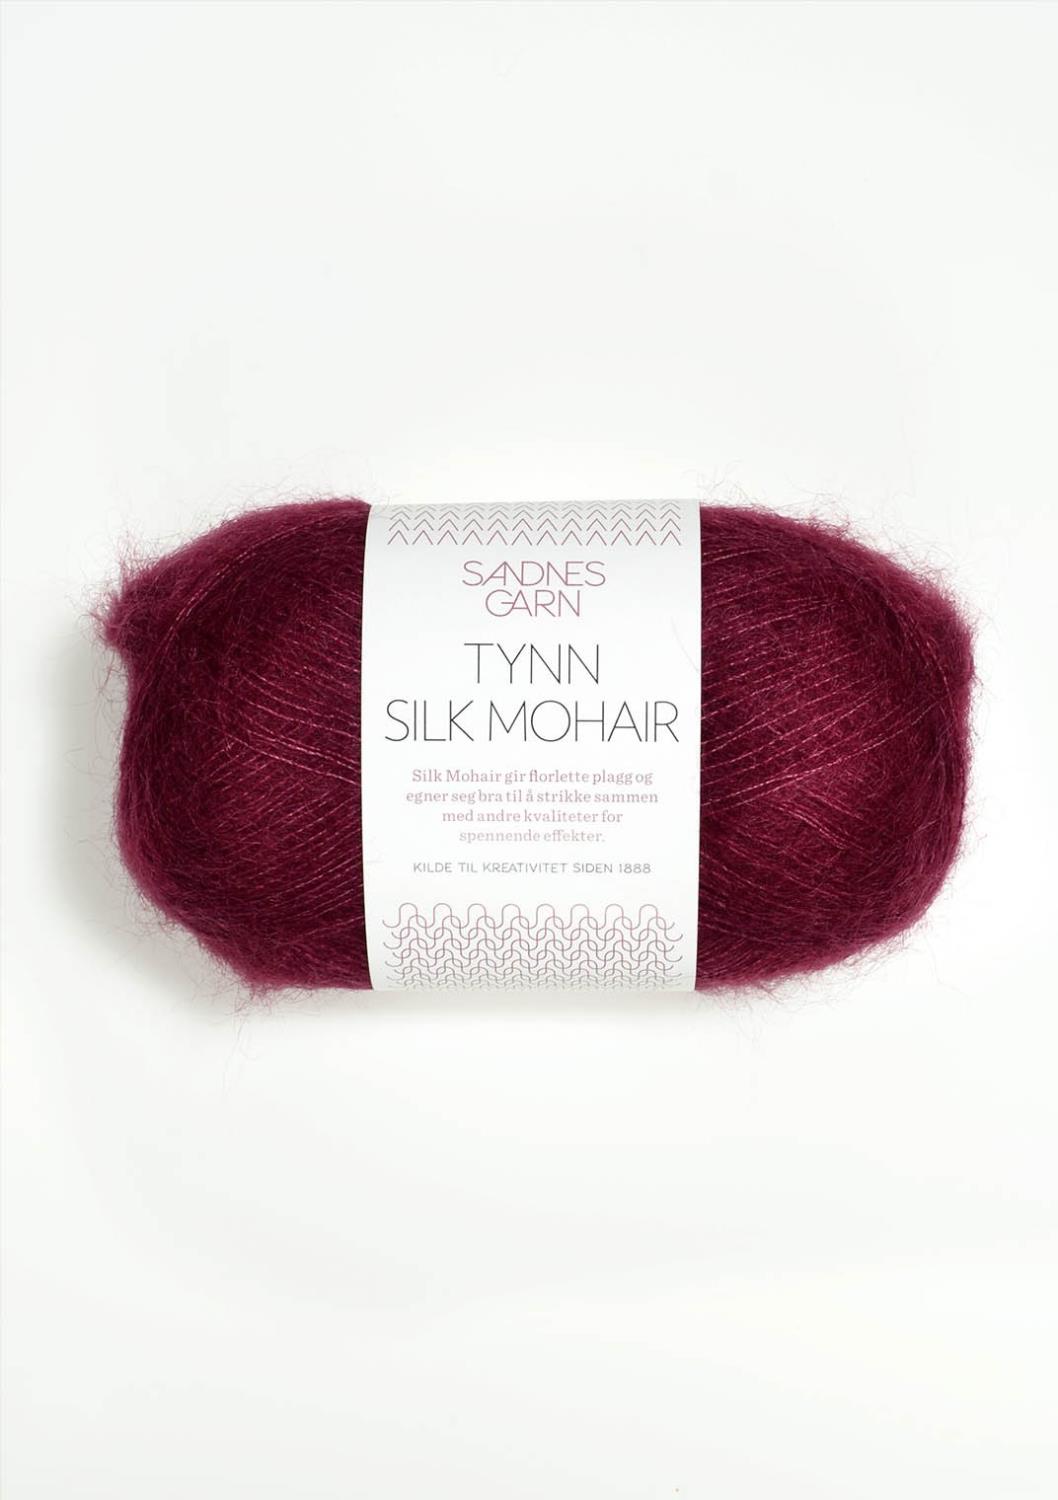 Tynn Silk Mohair Sandnes 4545 - Vinrød